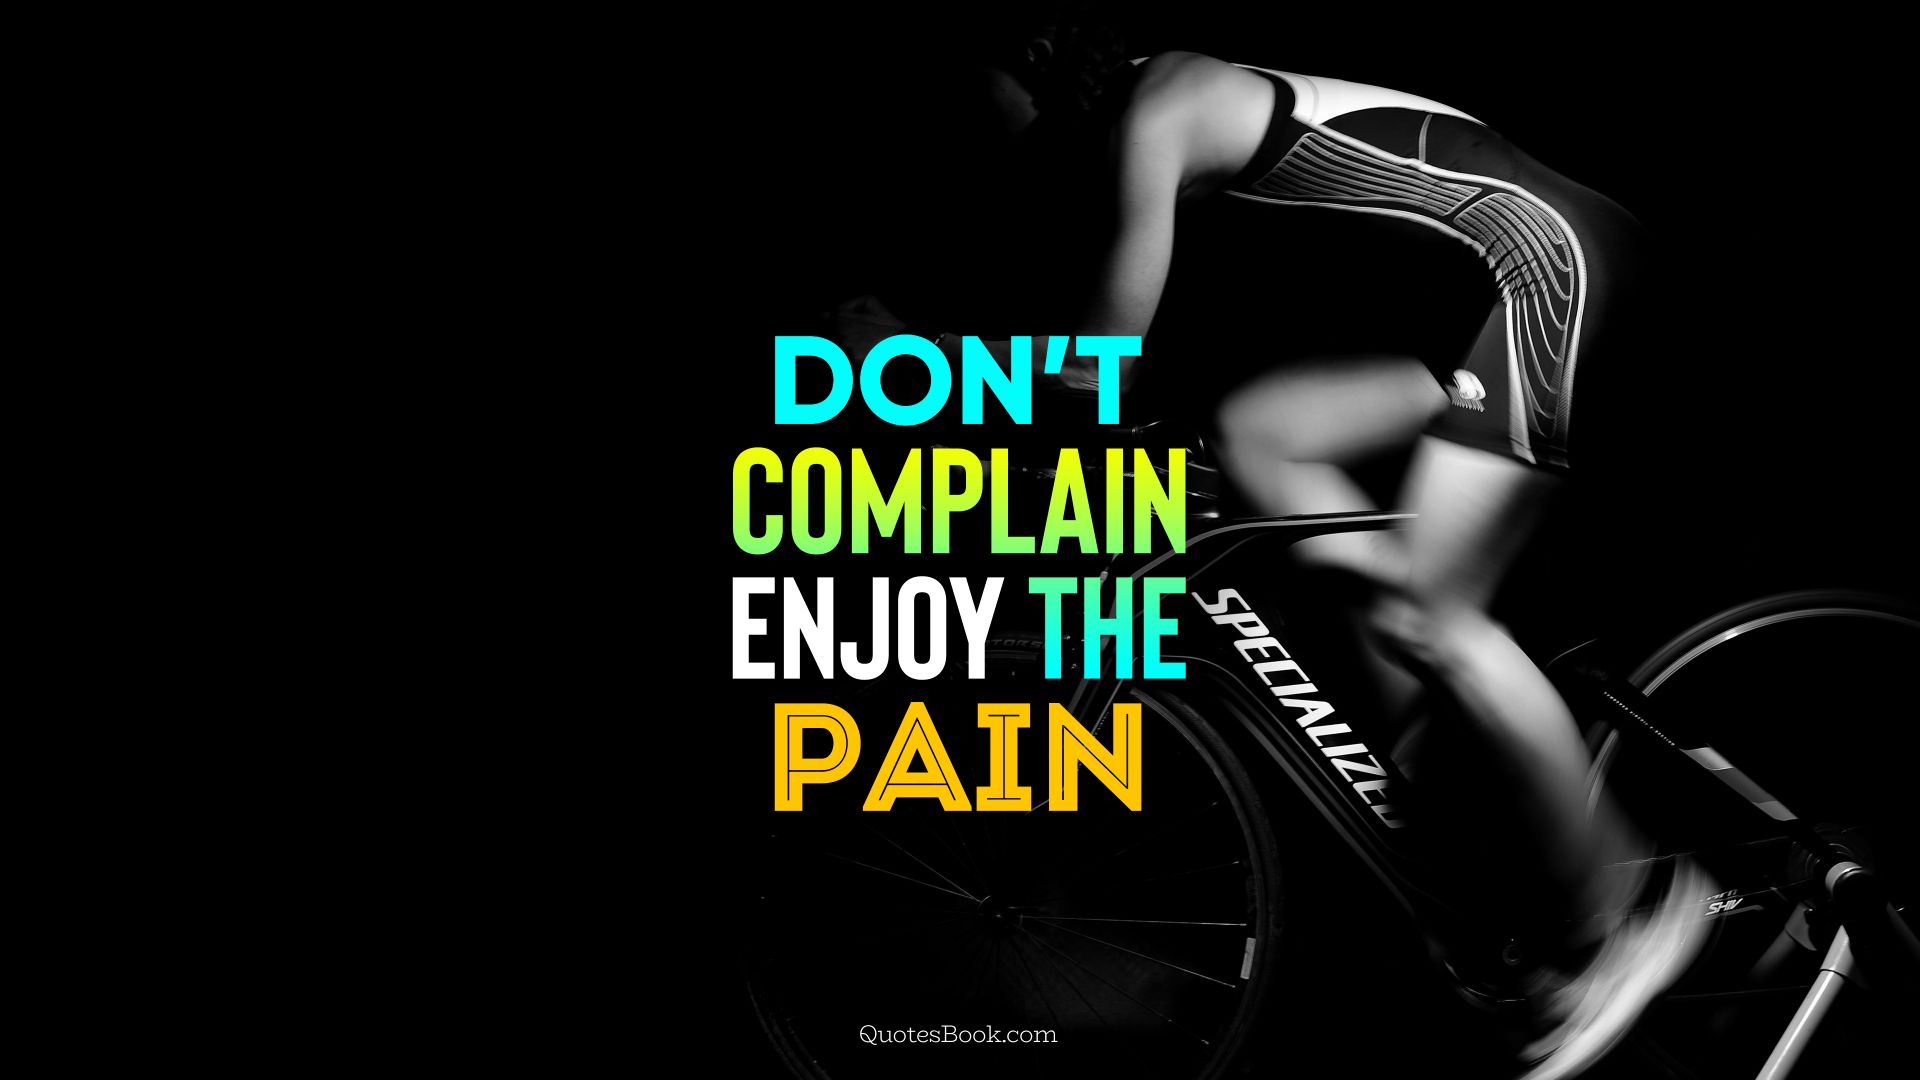 Don’t complain enjoy the pain